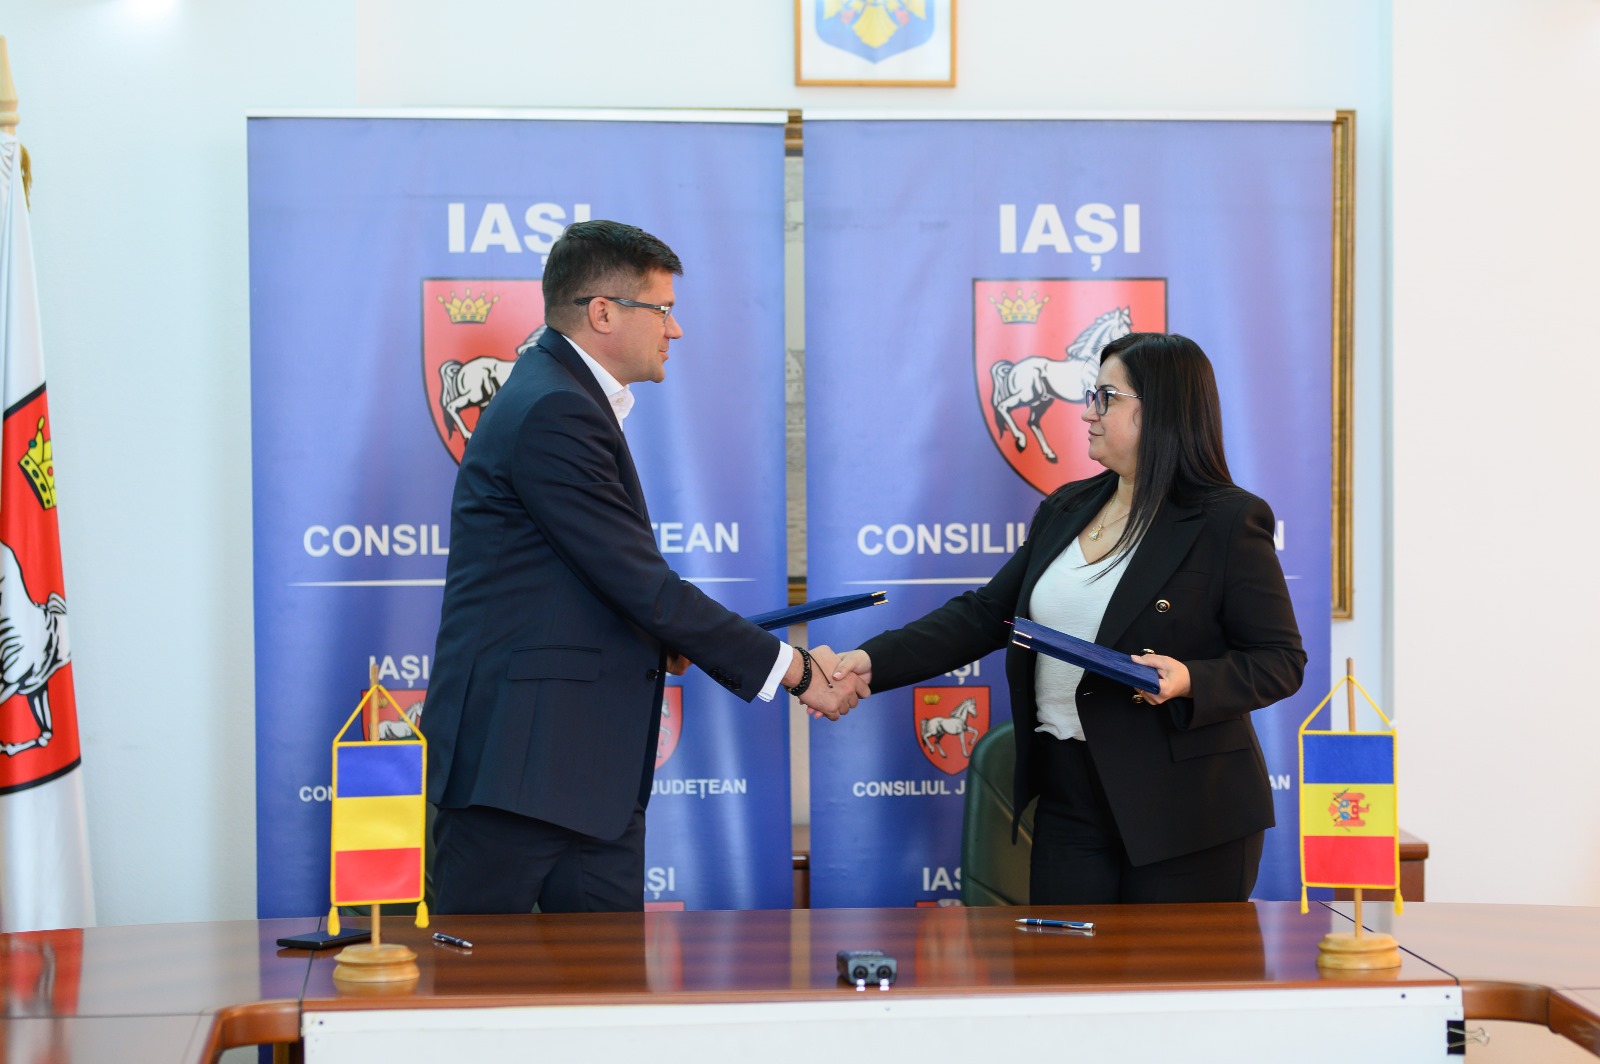 Acord de cooperare între raionul Basarabeasca și Județul Iași, România!